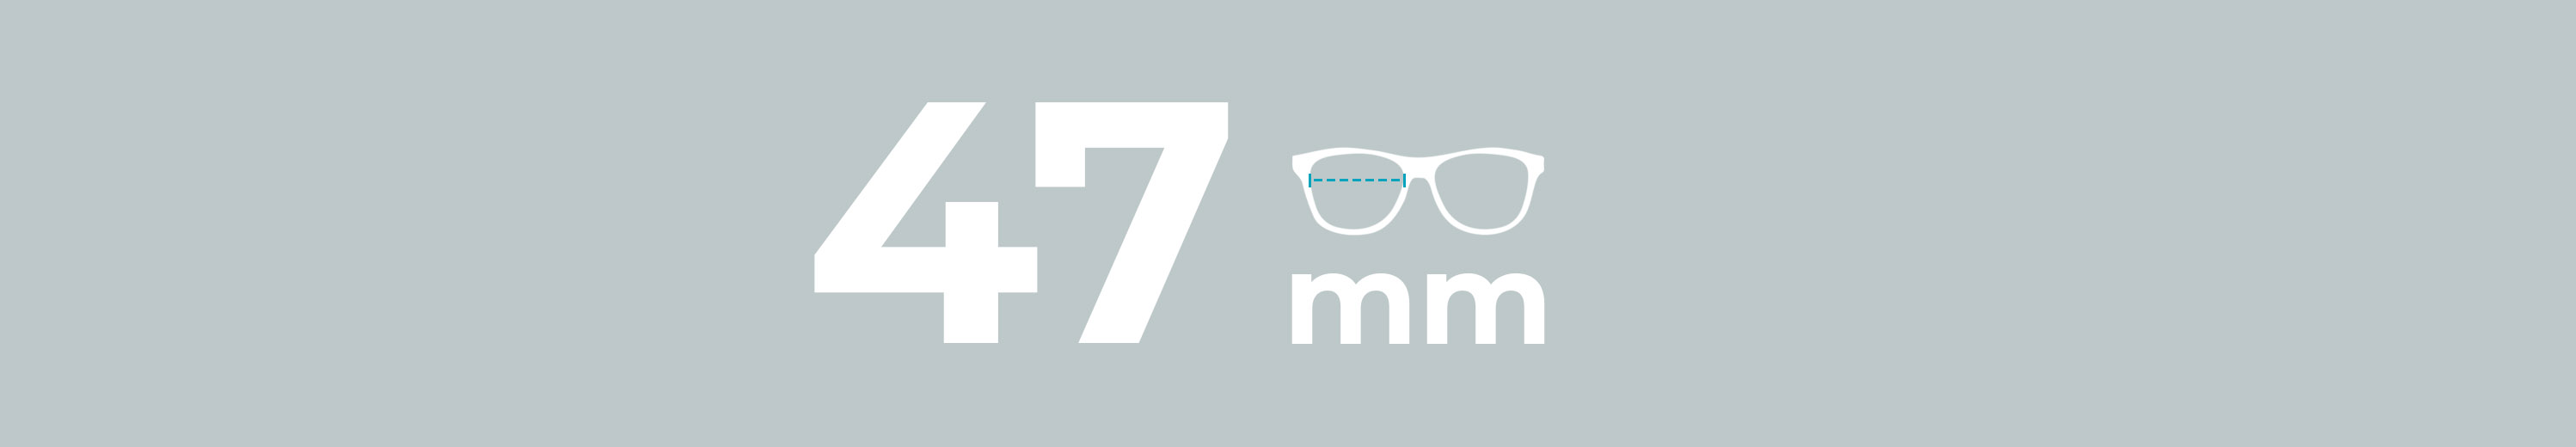 Eyeglasses 47mm Lens